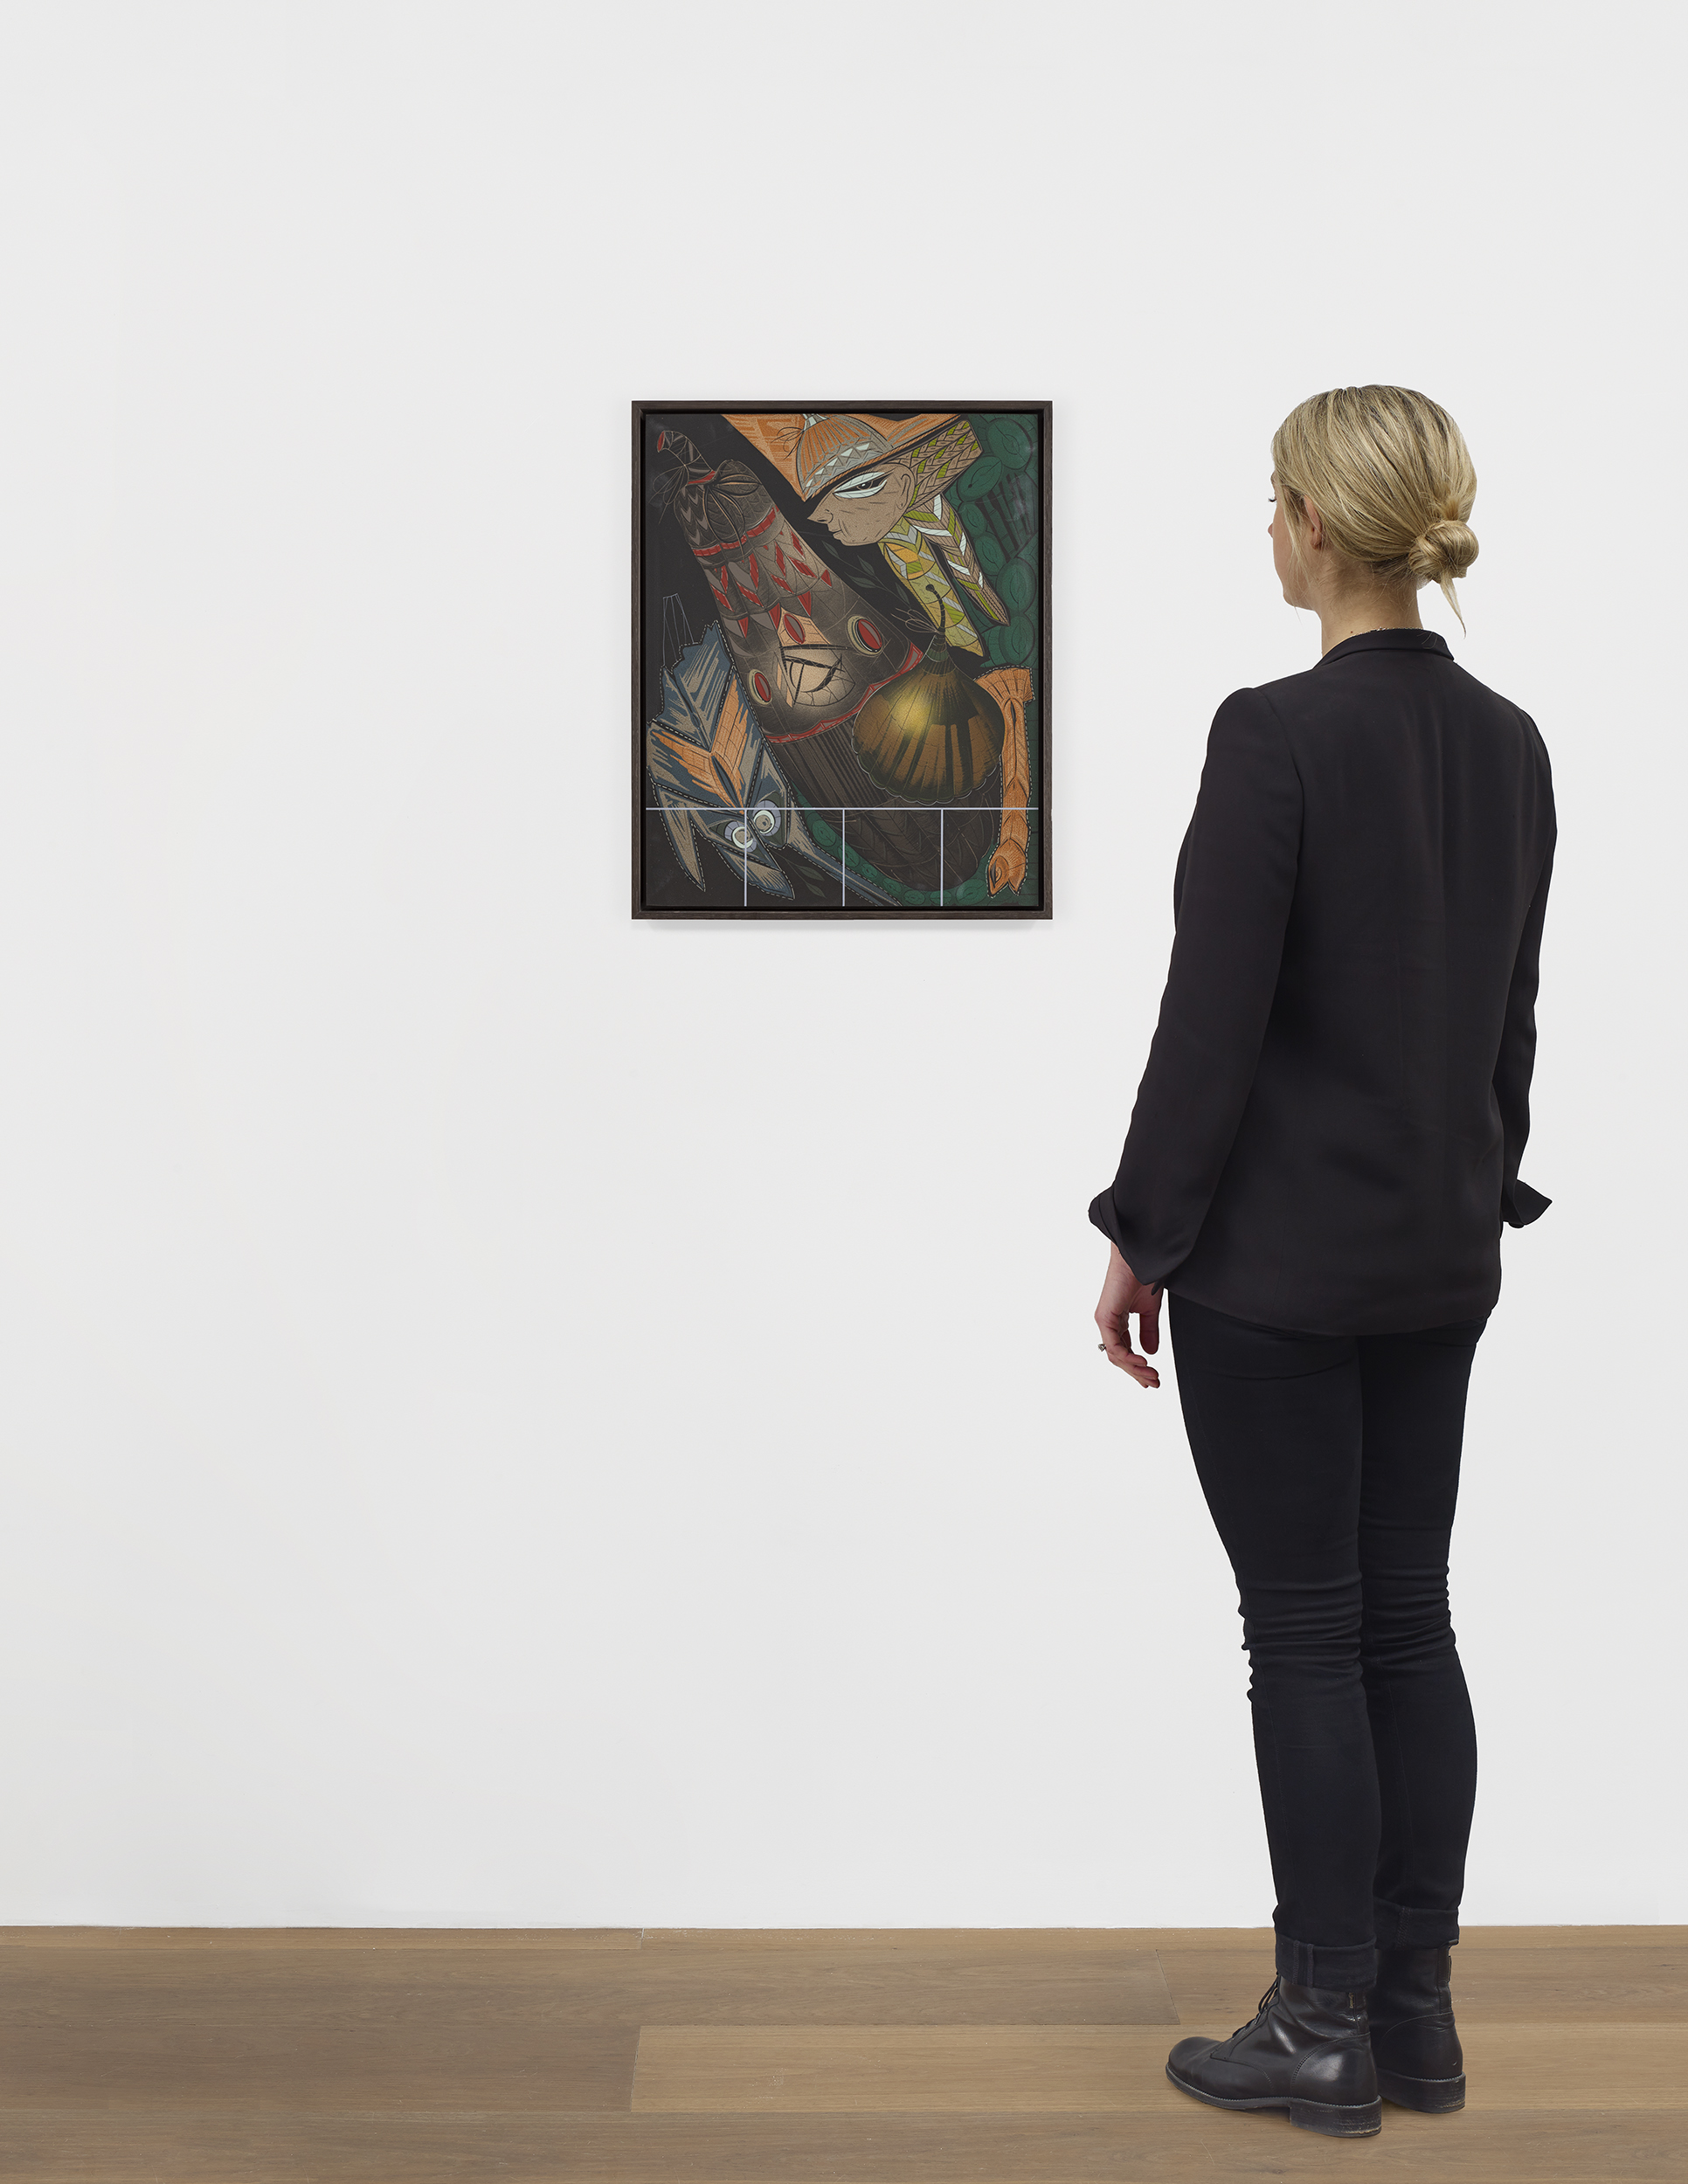 Scale view of Lari Pittman's painting Diorama 14